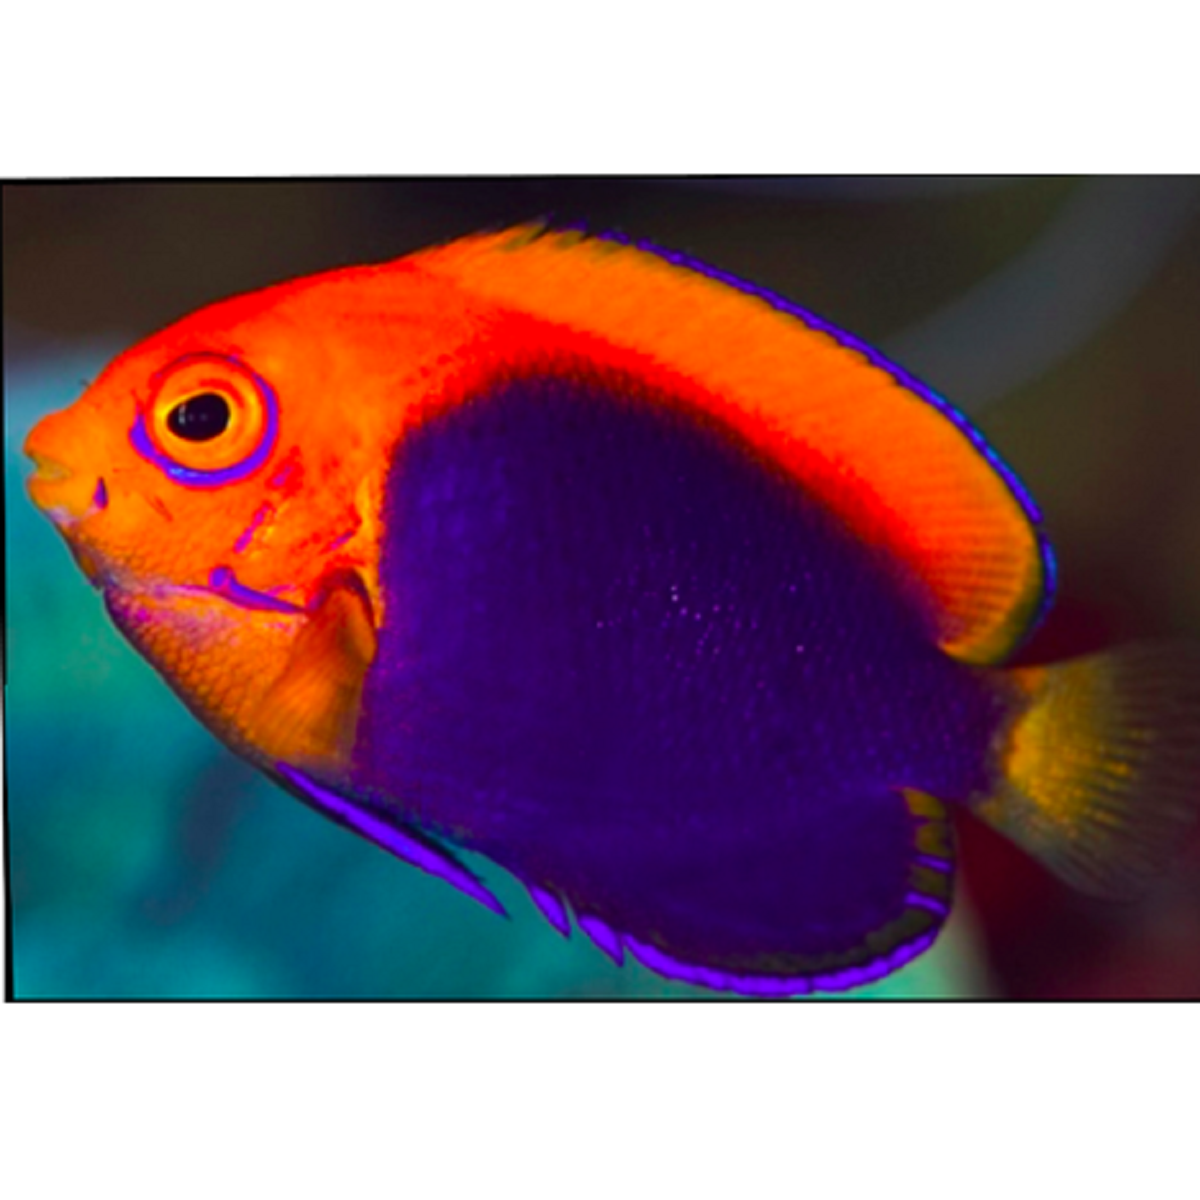 Flameback Angelfish - Violet Aquarium